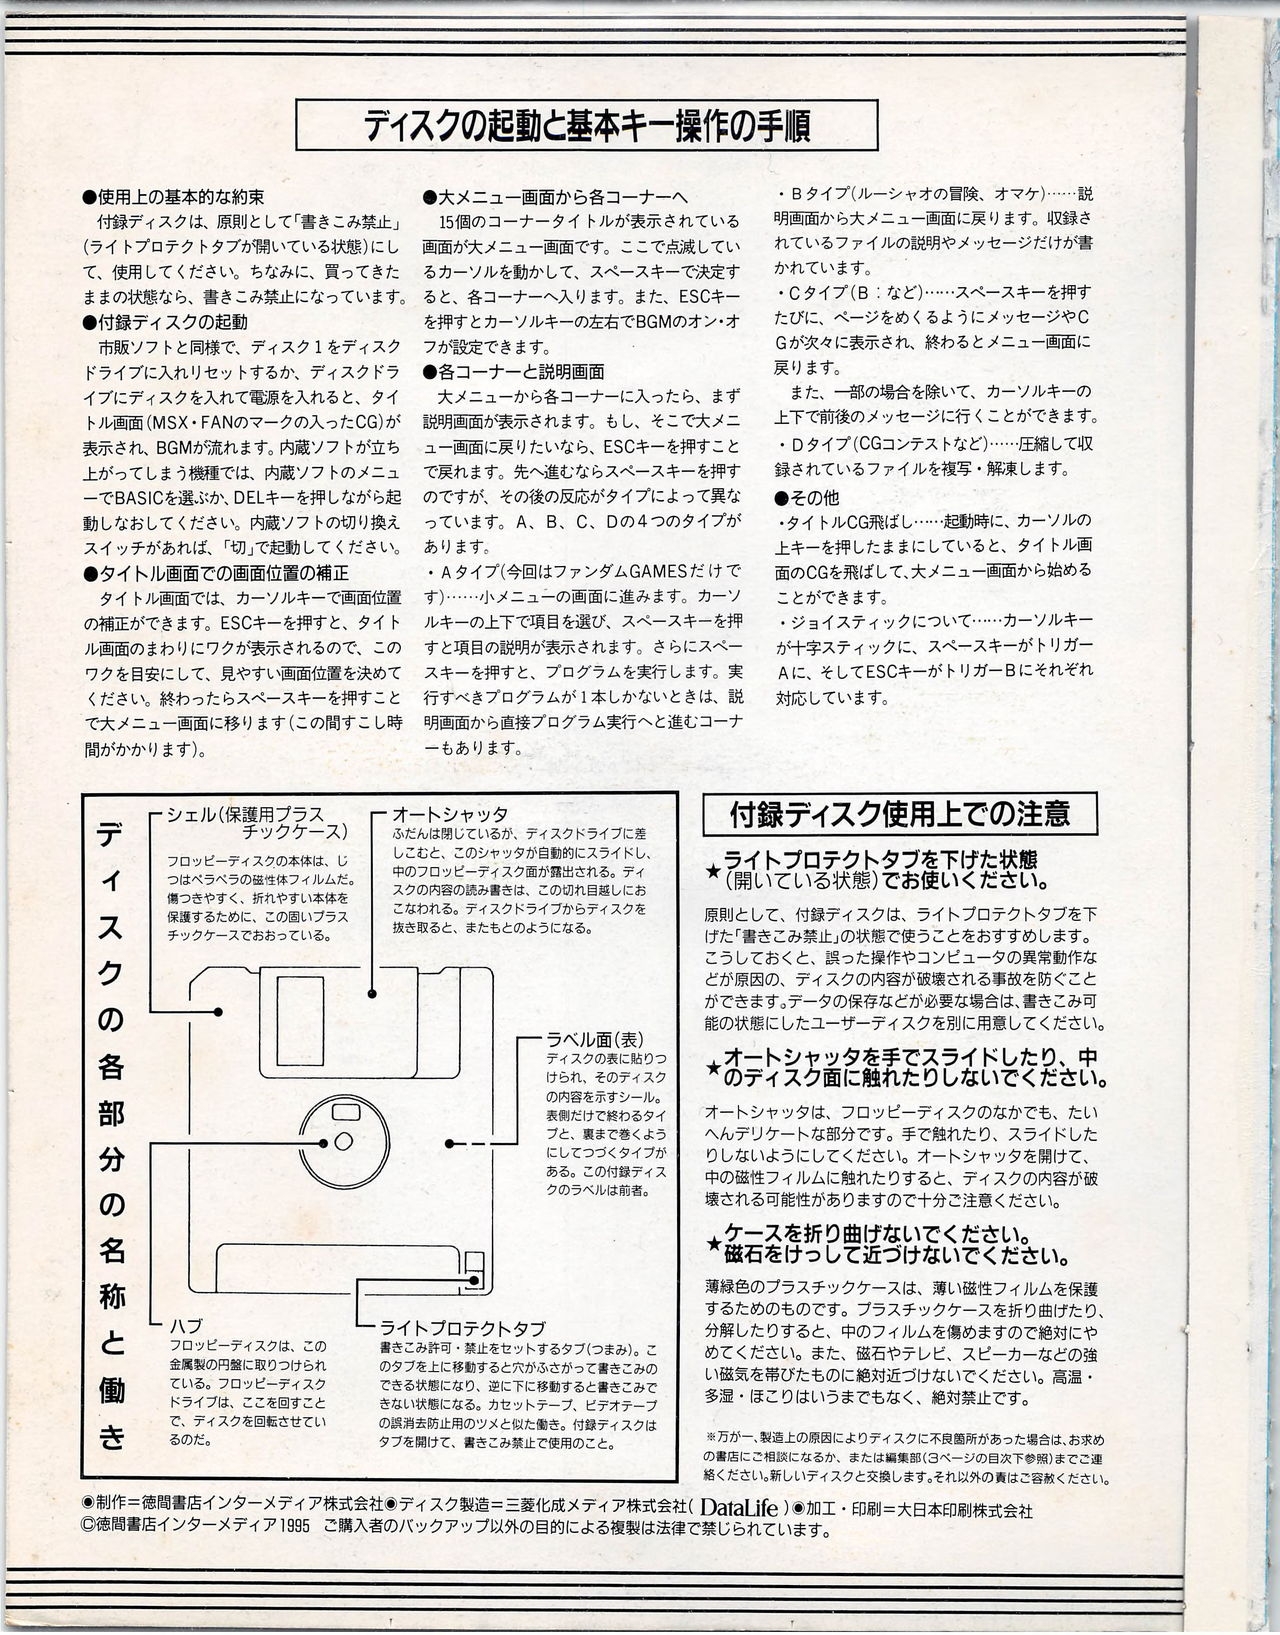 MSX Fan 1995-06 91